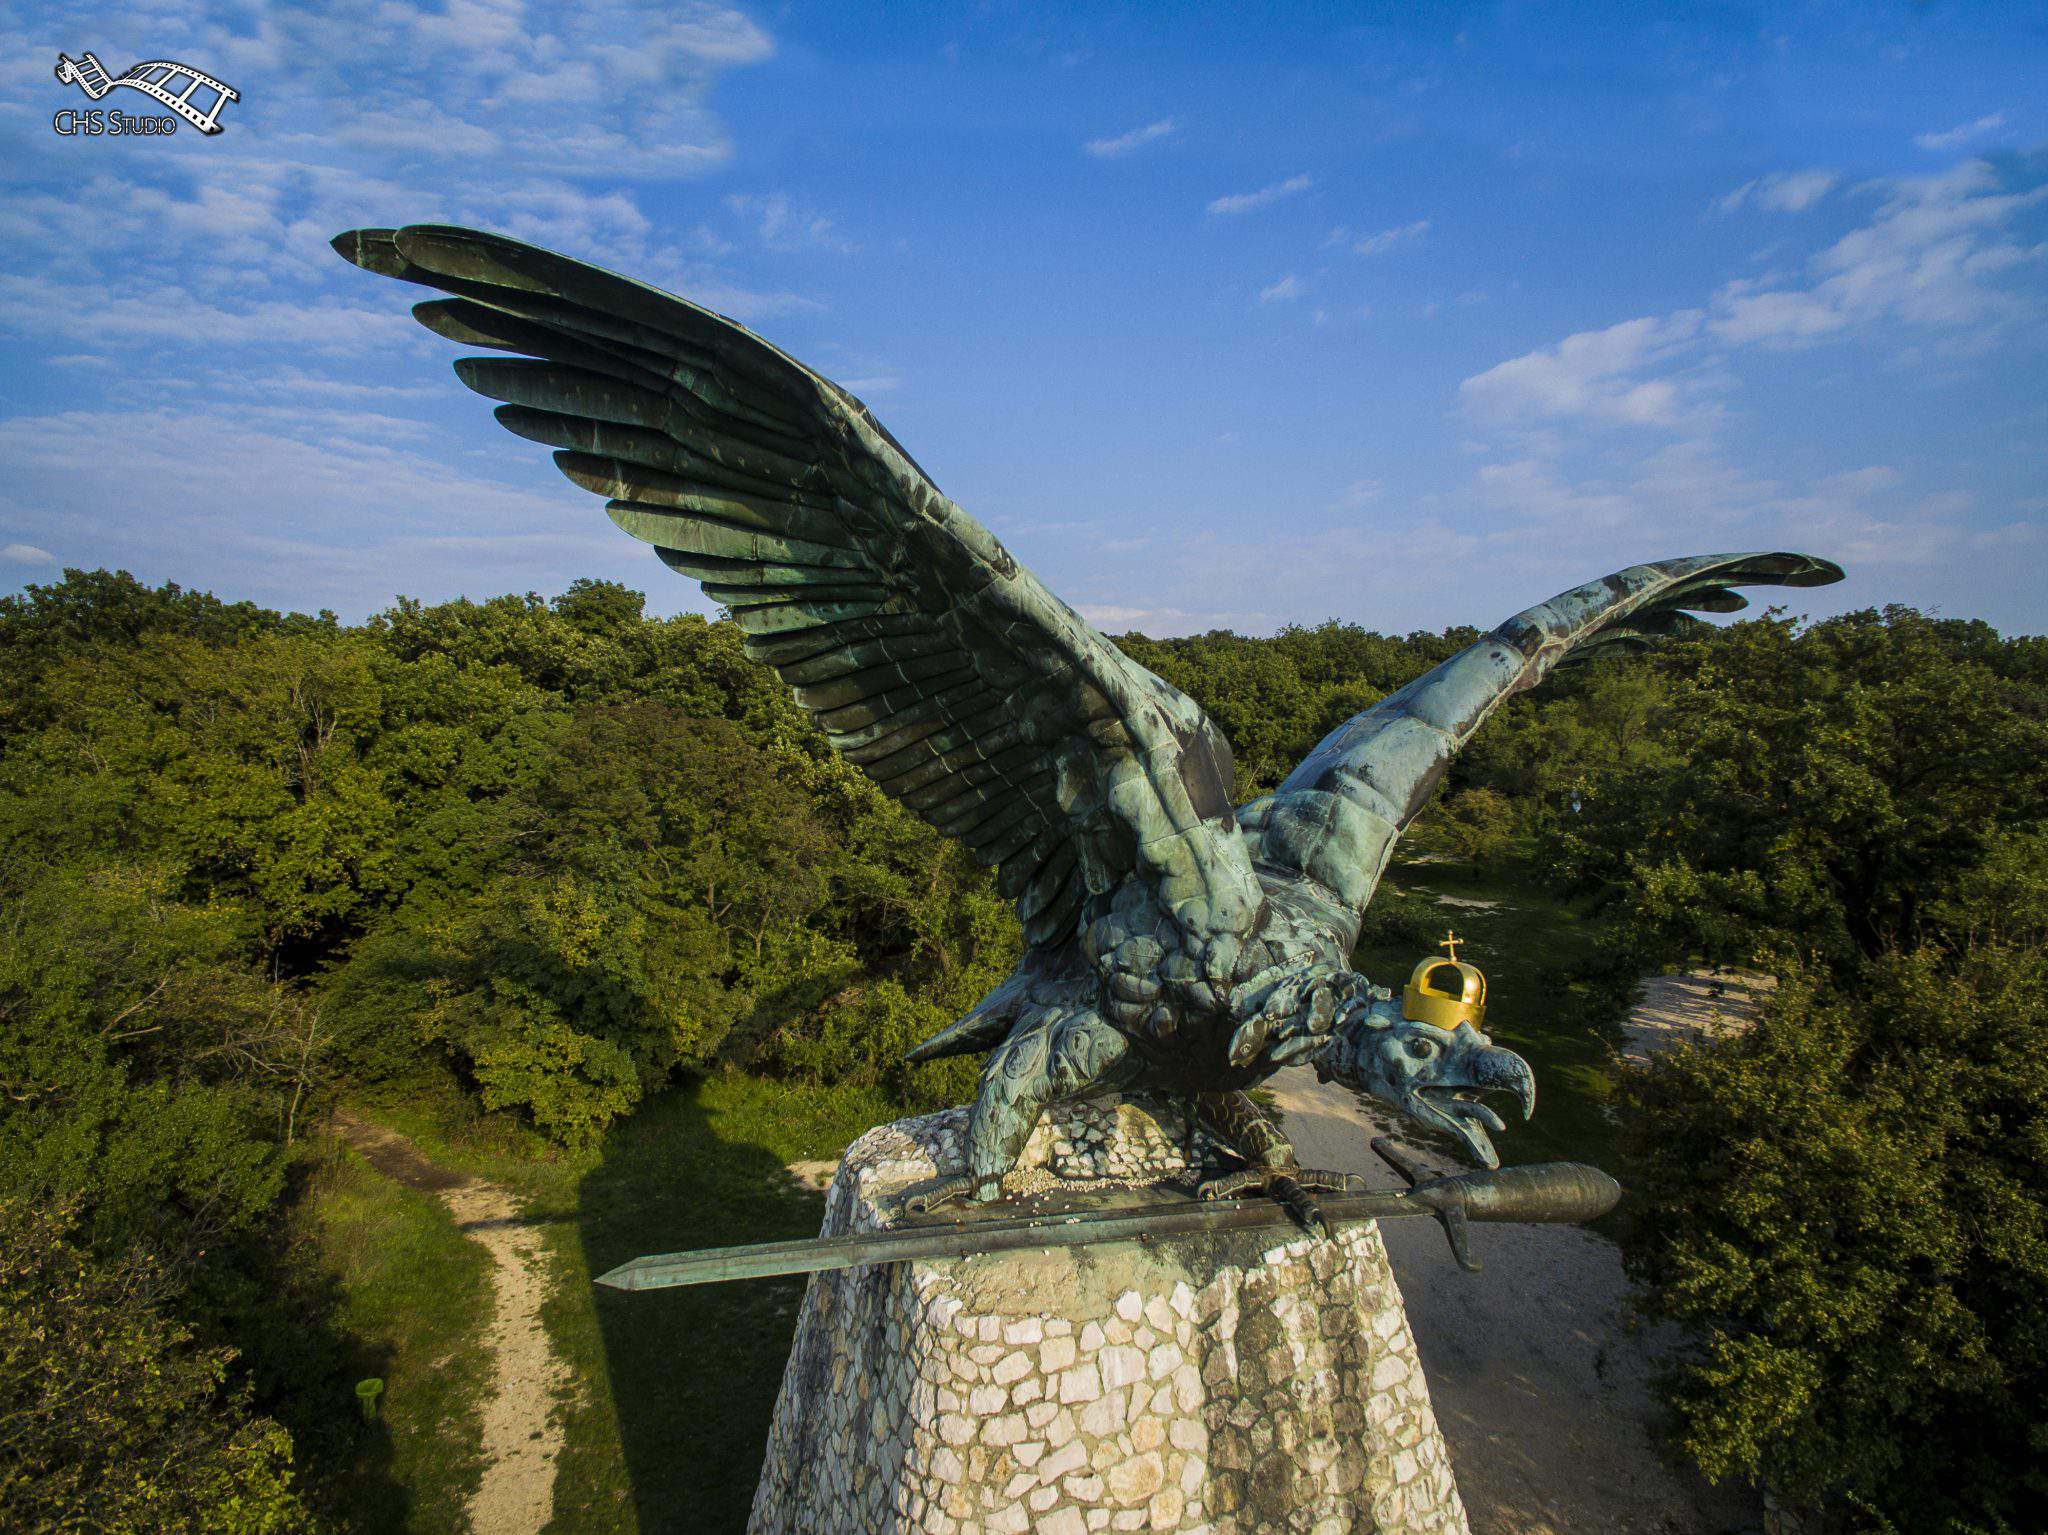 Tatabánya turul statua uccello aquila falco